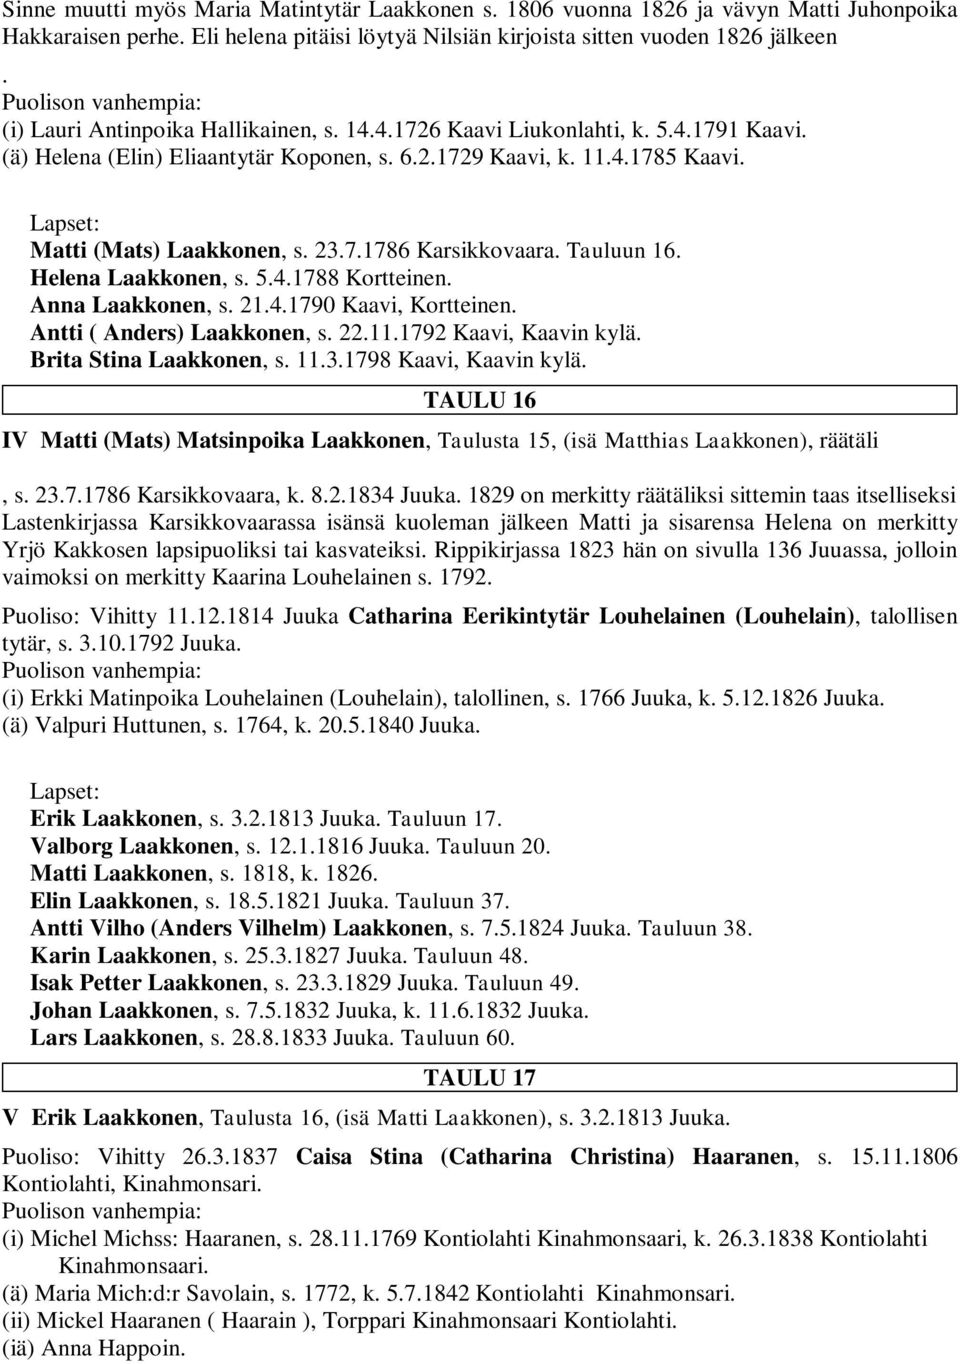 Tauluun 16. Helena Laakkonen, s. 5.4.1788 Kortteinen. Anna Laakkonen, s. 21.4.1790 Kaavi, Kortteinen. Antti ( Anders) Laakkonen, s. 22.11.1792 Kaavi, Kaavin kylä. Brita Stina Laakkonen, s. 11.3.